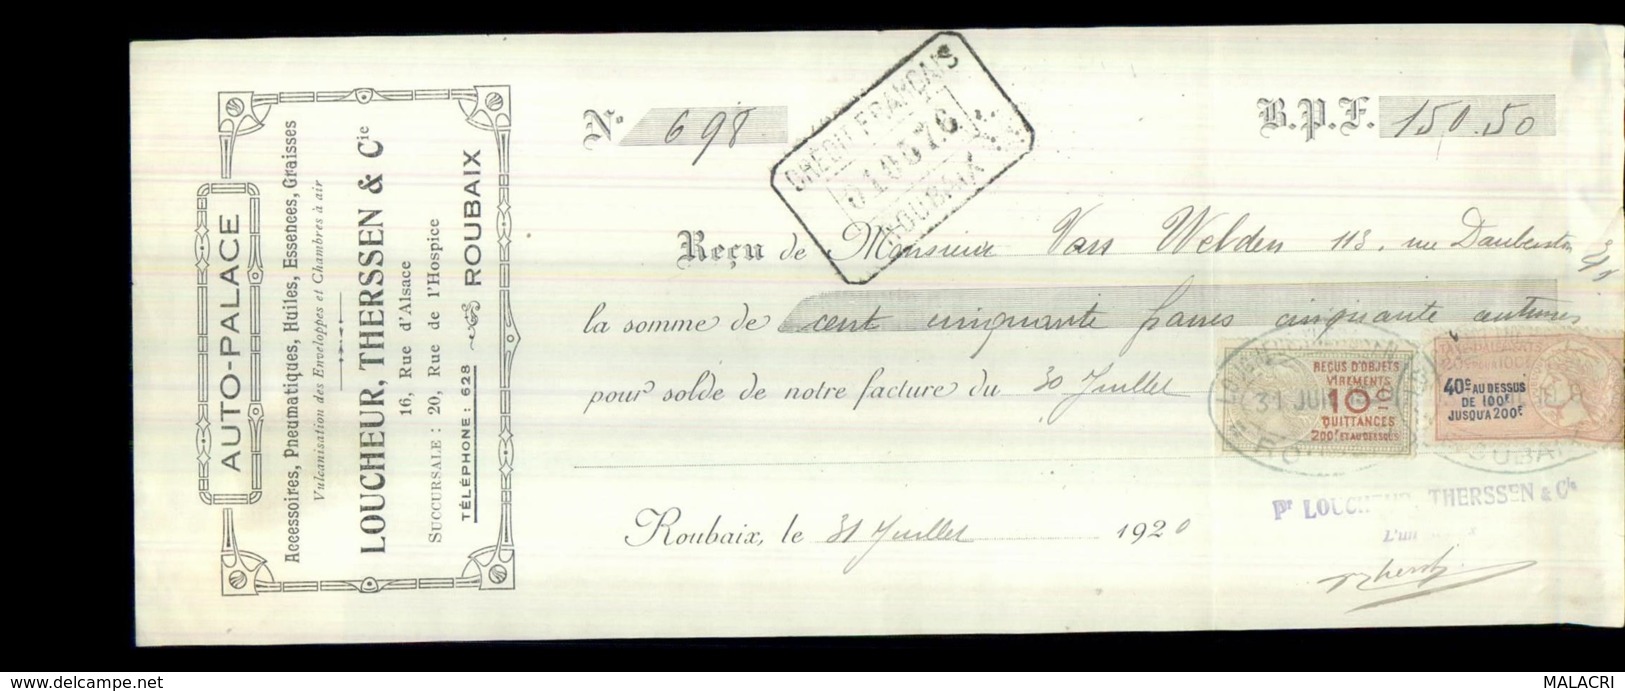 0-3211-L-D-C-4293   Auto Palace Eugène Therssen&cie à Roubaix M.van Welden 30-7-1920 - Lettres De Change